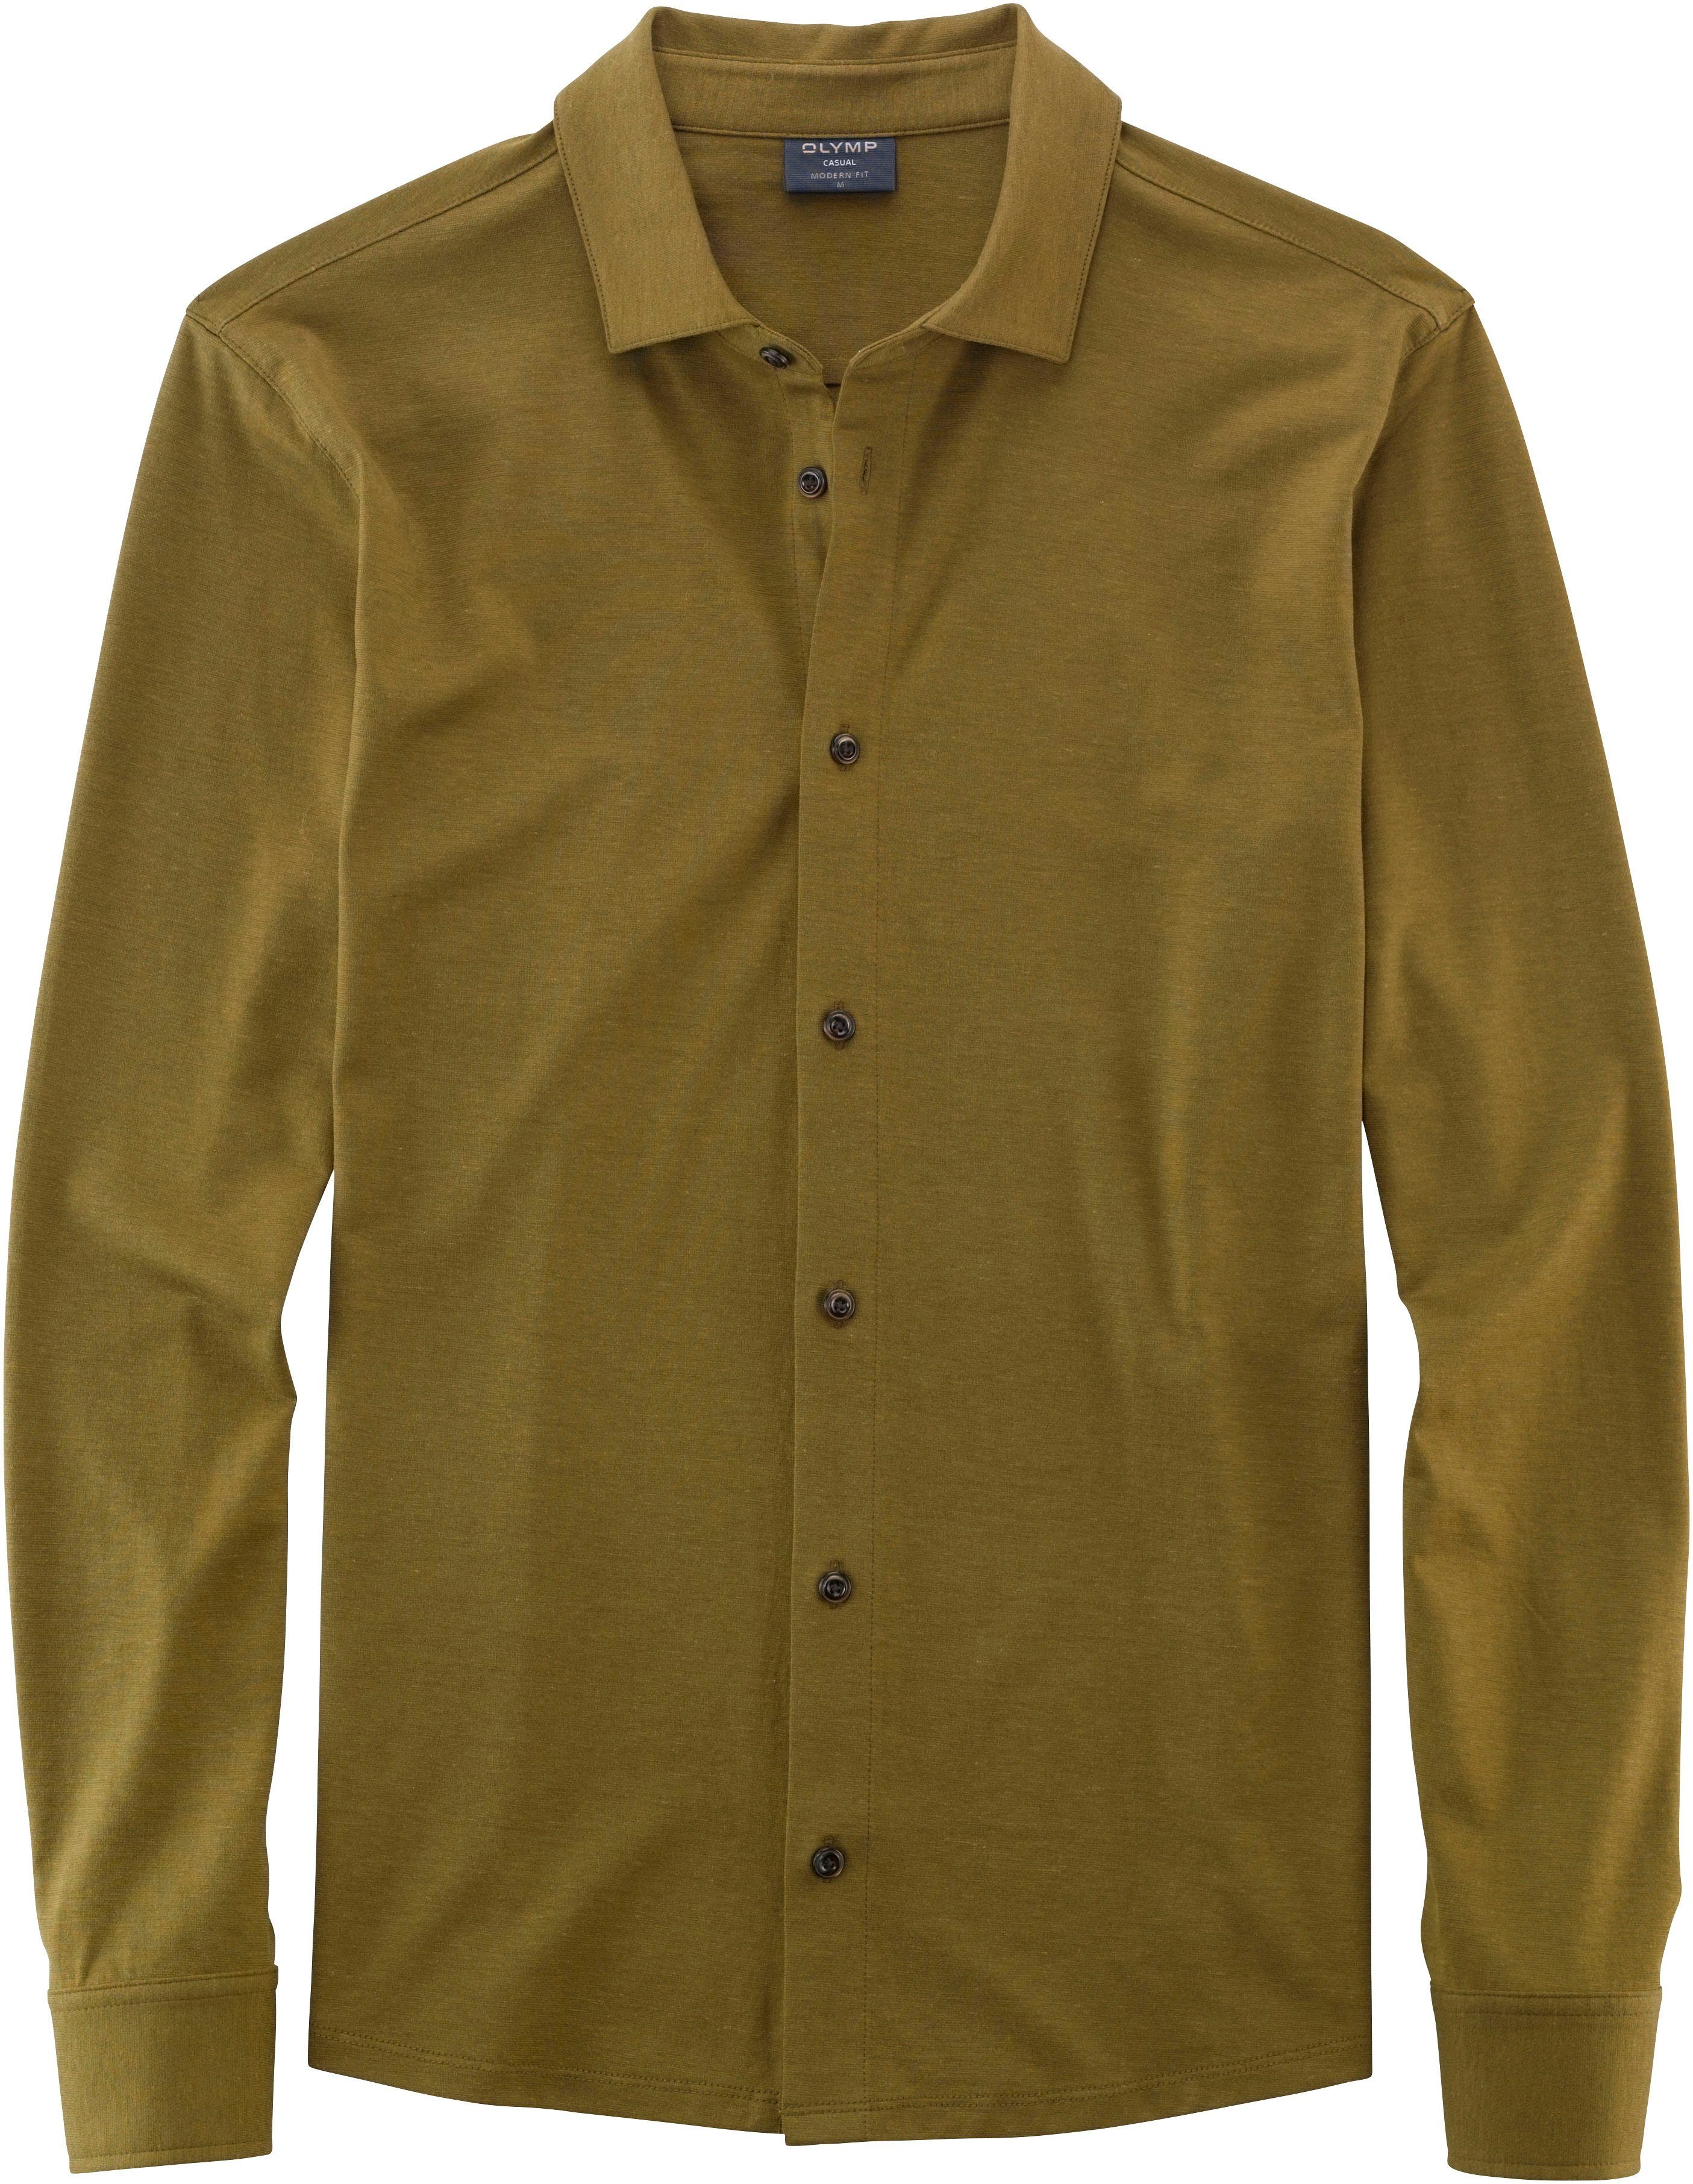 [Niedrigster Preis und höchste Qualität] OLYMP Langarm-Poloshirt Modern olive Fit